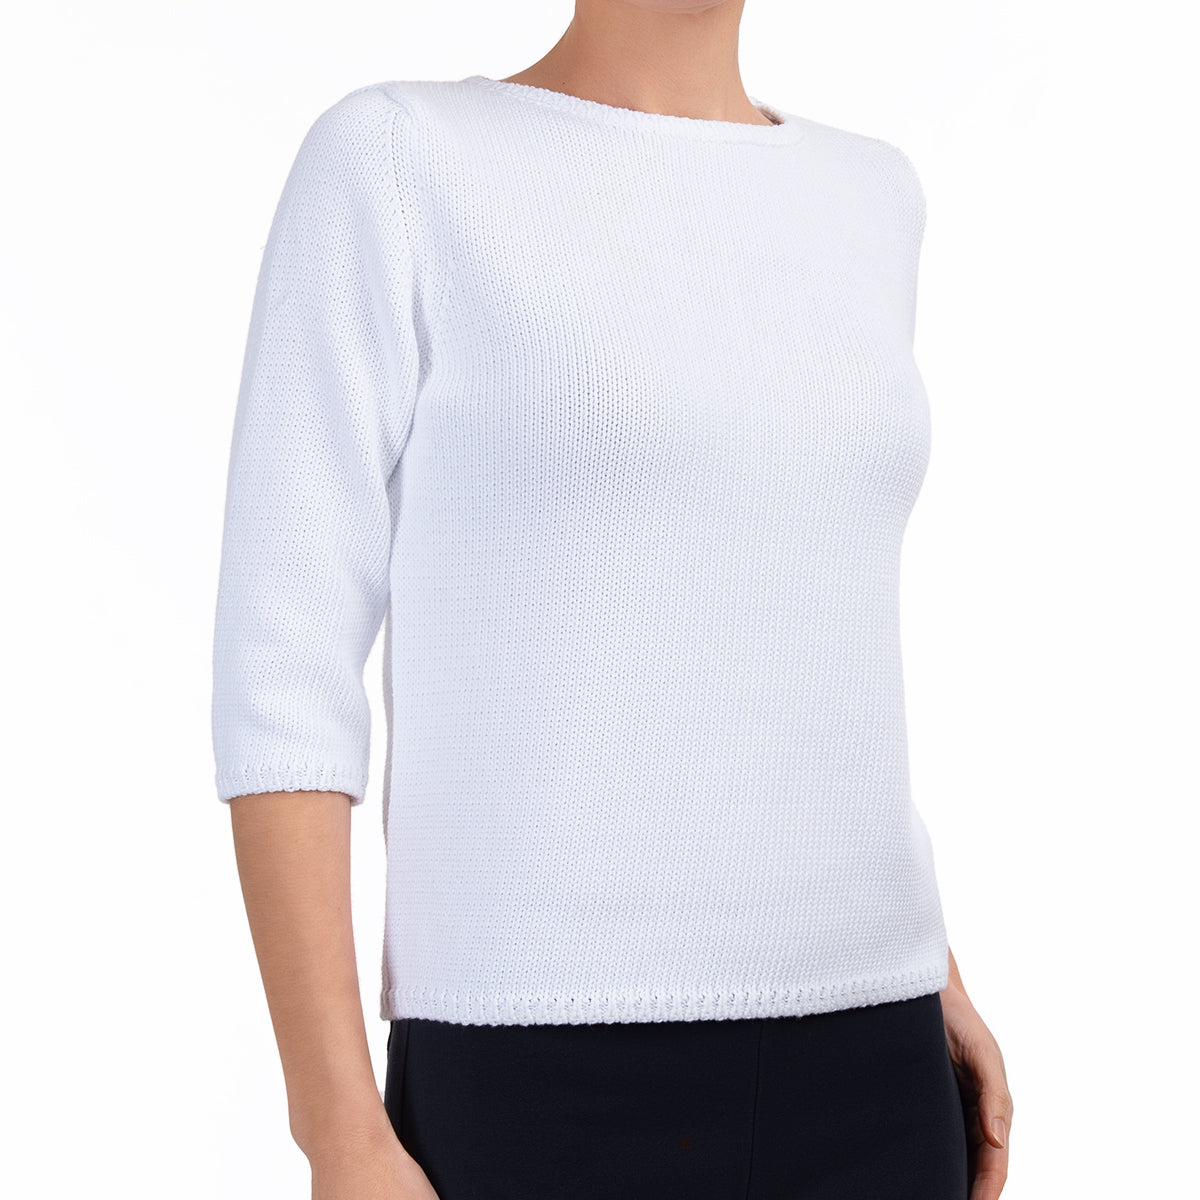 Posture Shirt Pullover for Women (as1, alpha, s, regular, regular,  White/Gray)